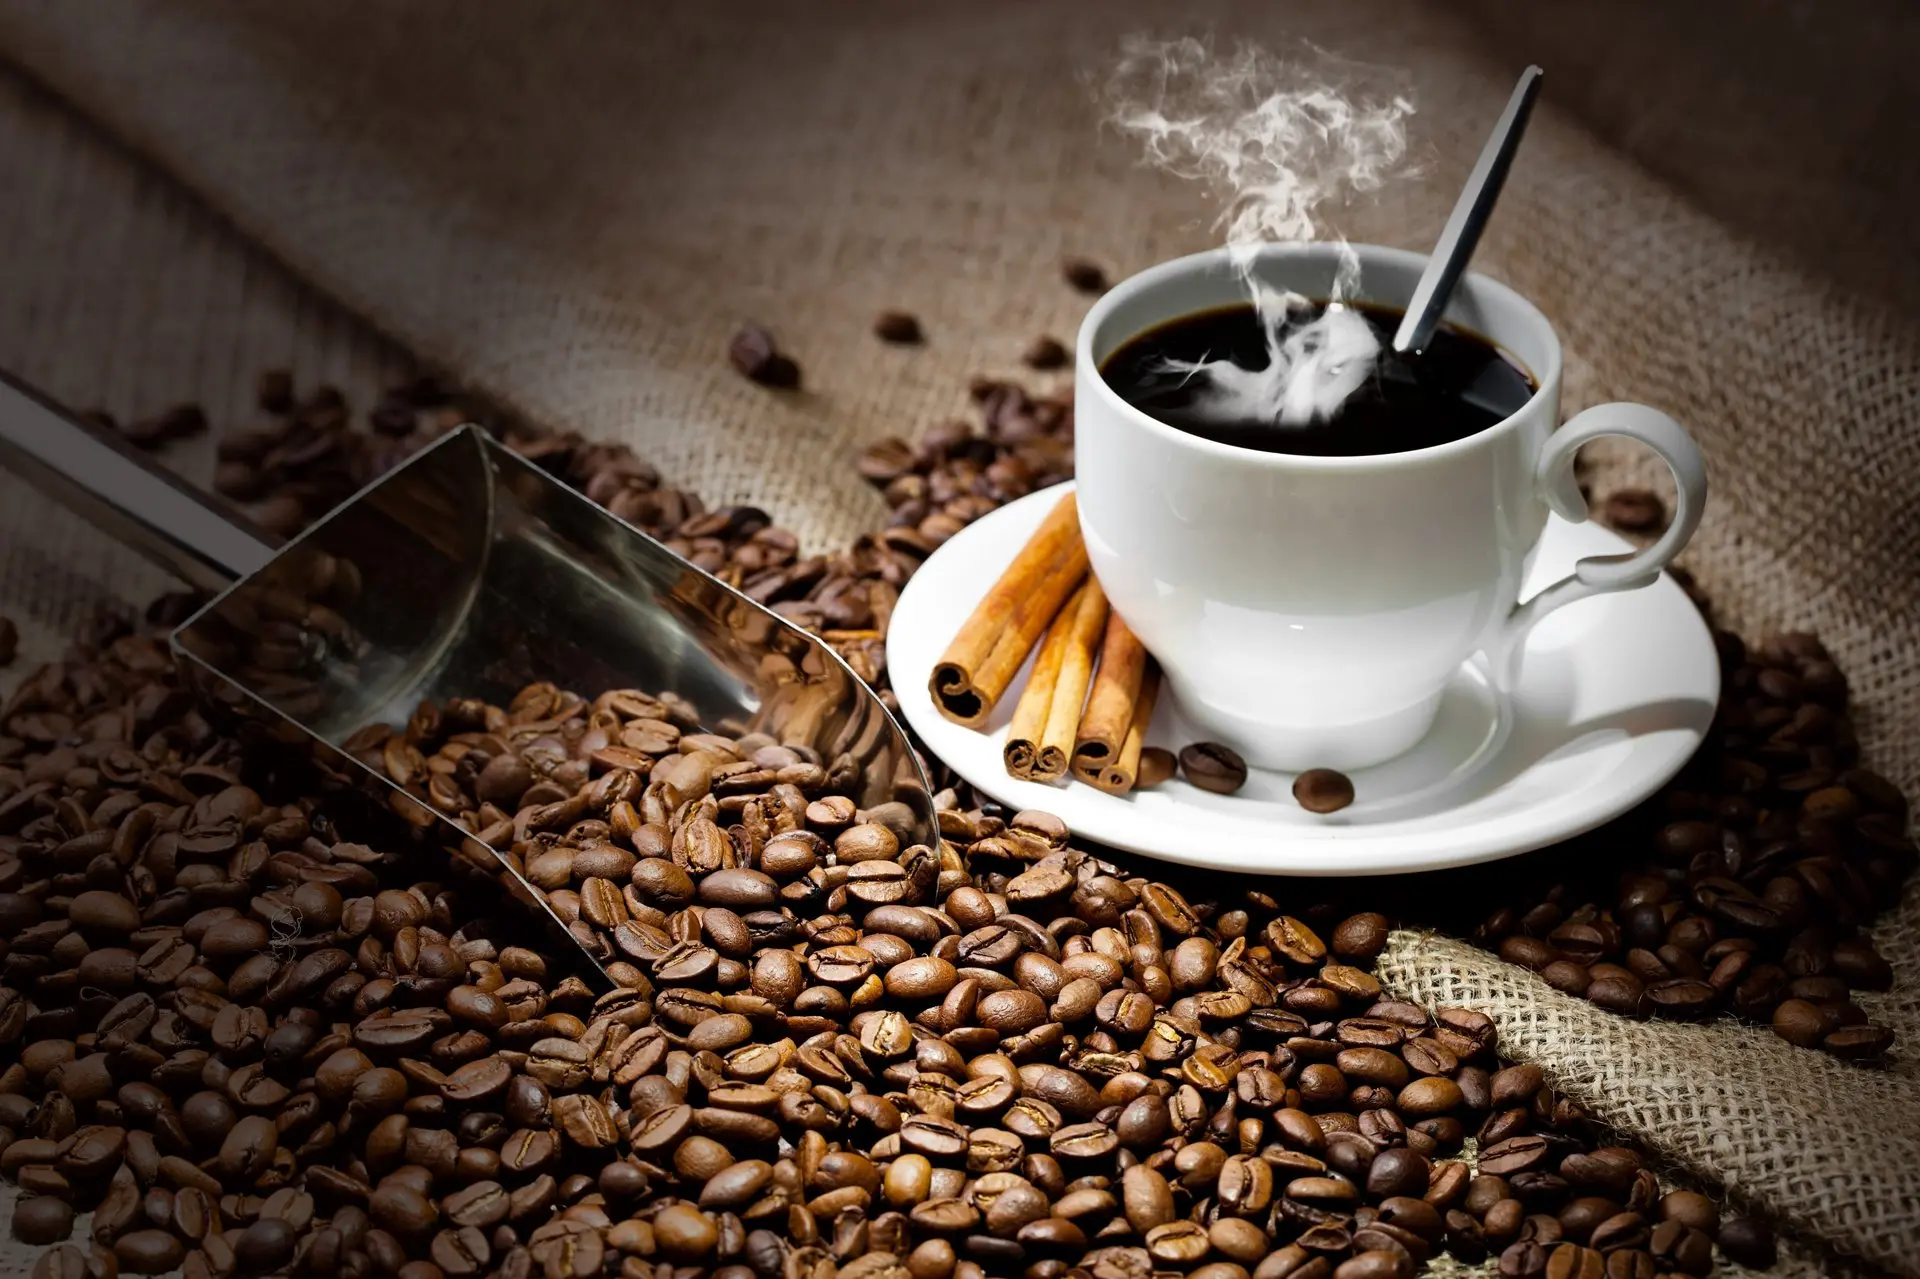 Perbarui gambar cangkir kopi cantik TOP terbaru tahun 2020 - Bingkai Foto